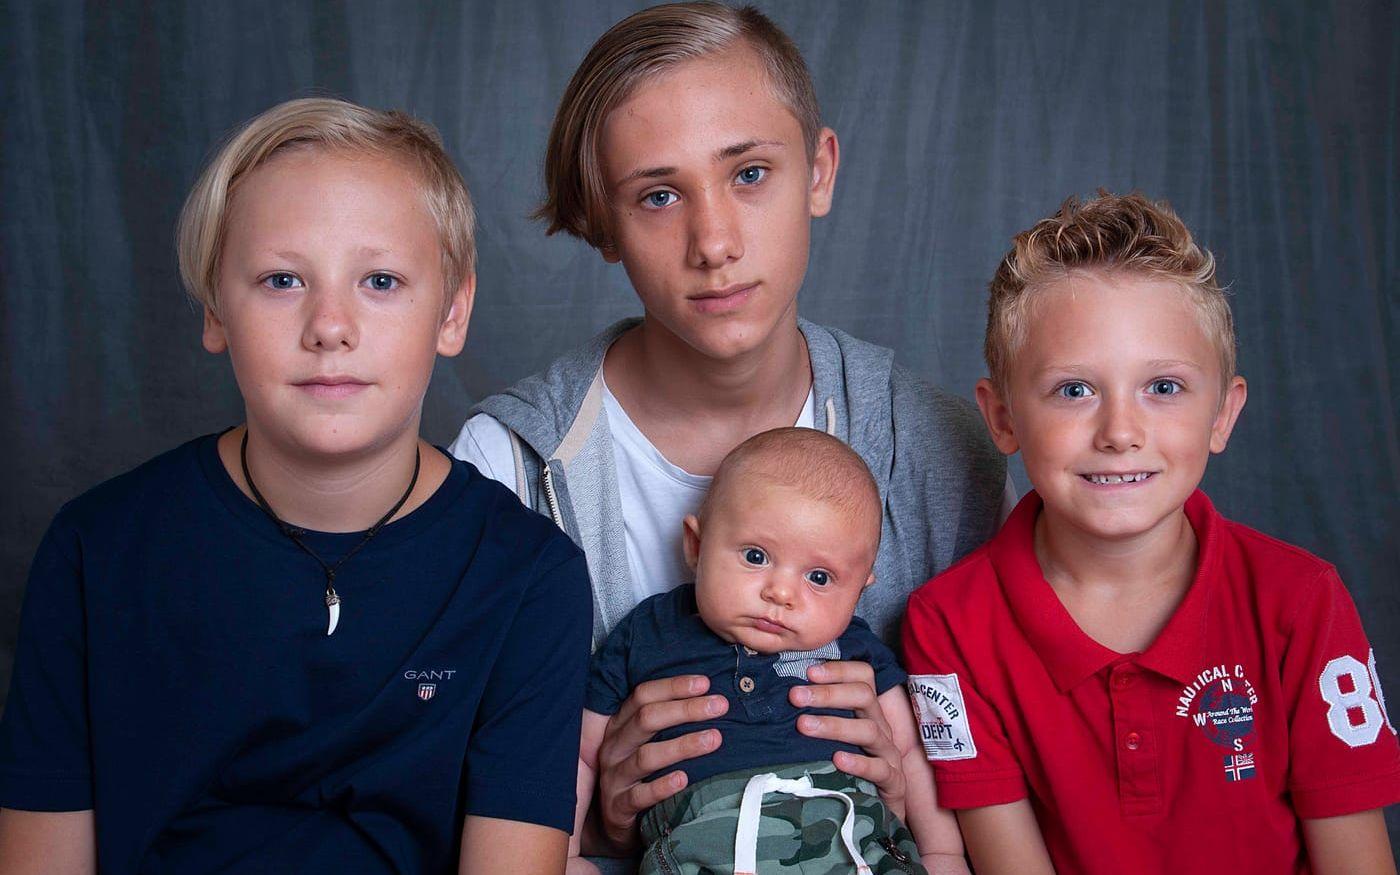 Martin och Helene Green, Halmstad fick den 28 maj en pojke som heter Albin. Han vägde 3640 g och var 51 cm lång. Syskonen heter Robin, Rasmus och Tim.